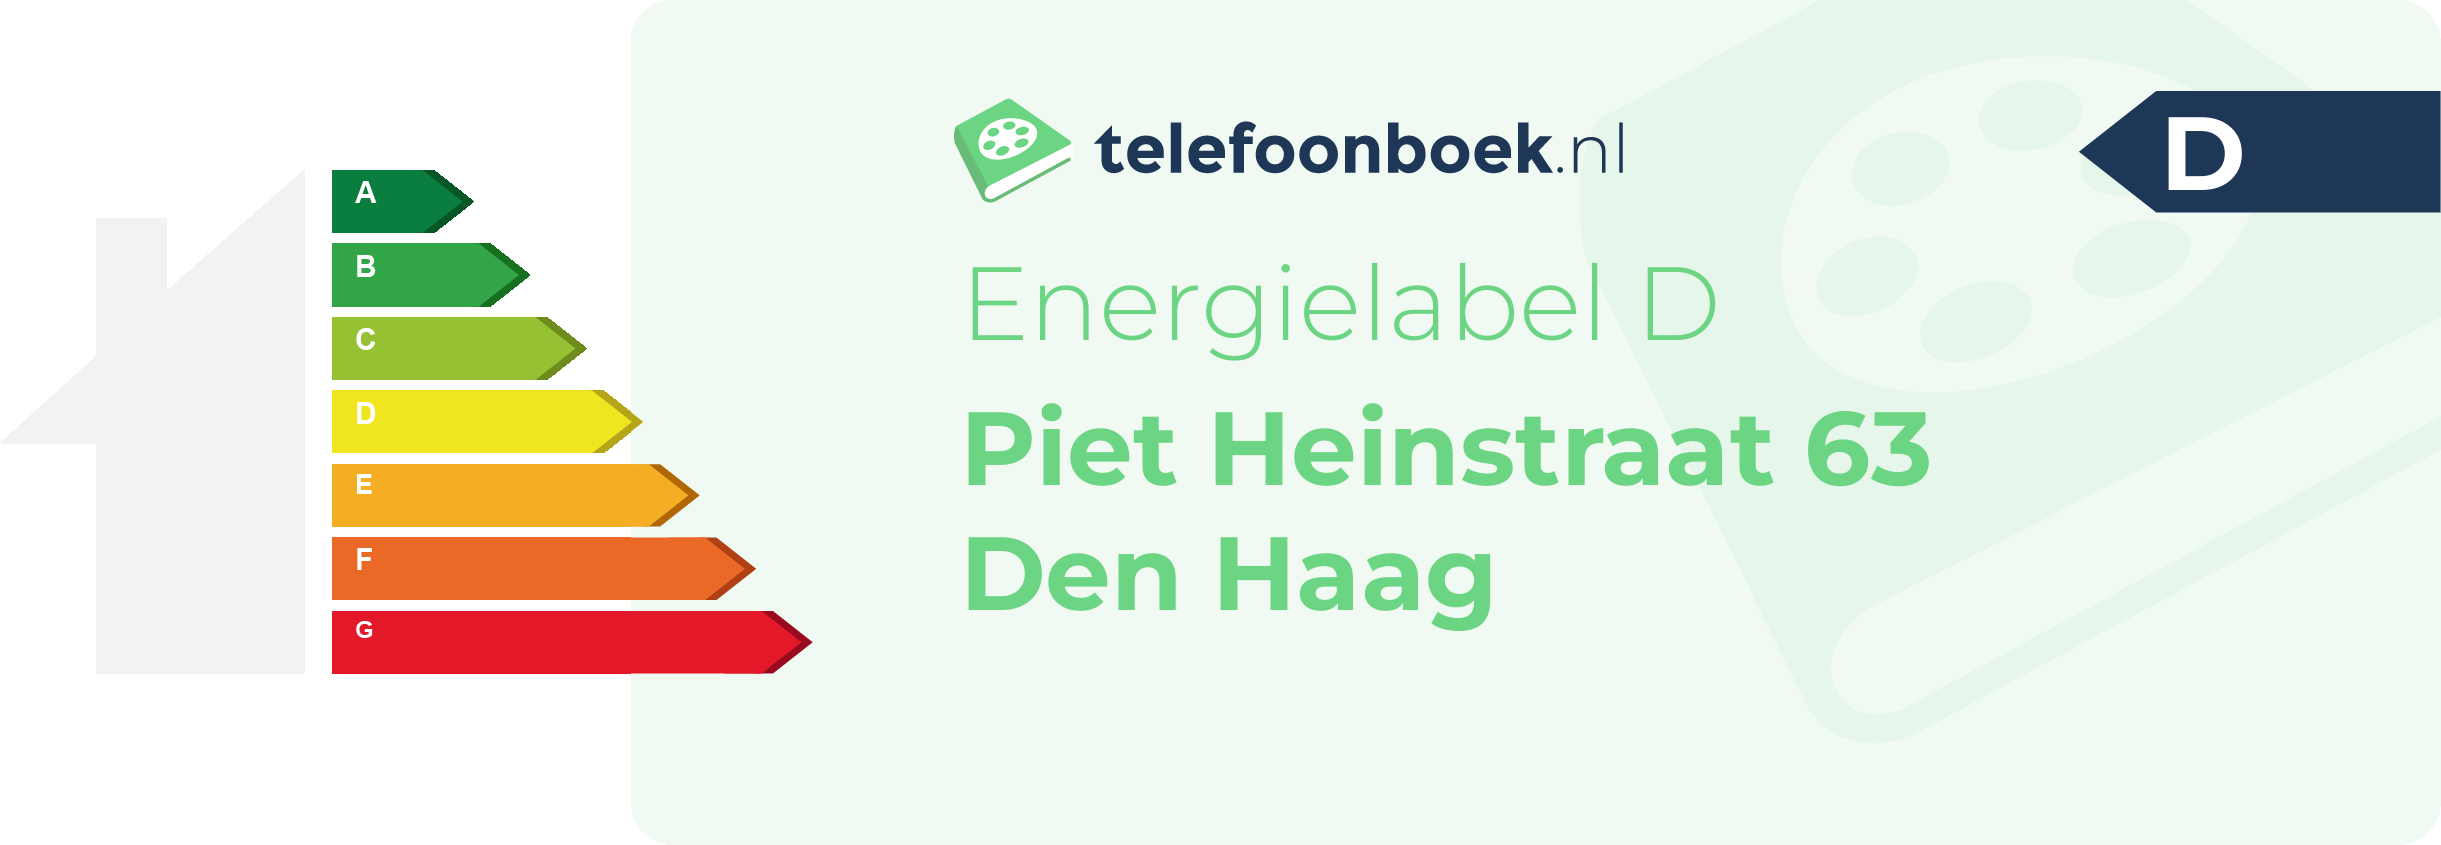 Energielabel Piet Heinstraat 63 Den Haag